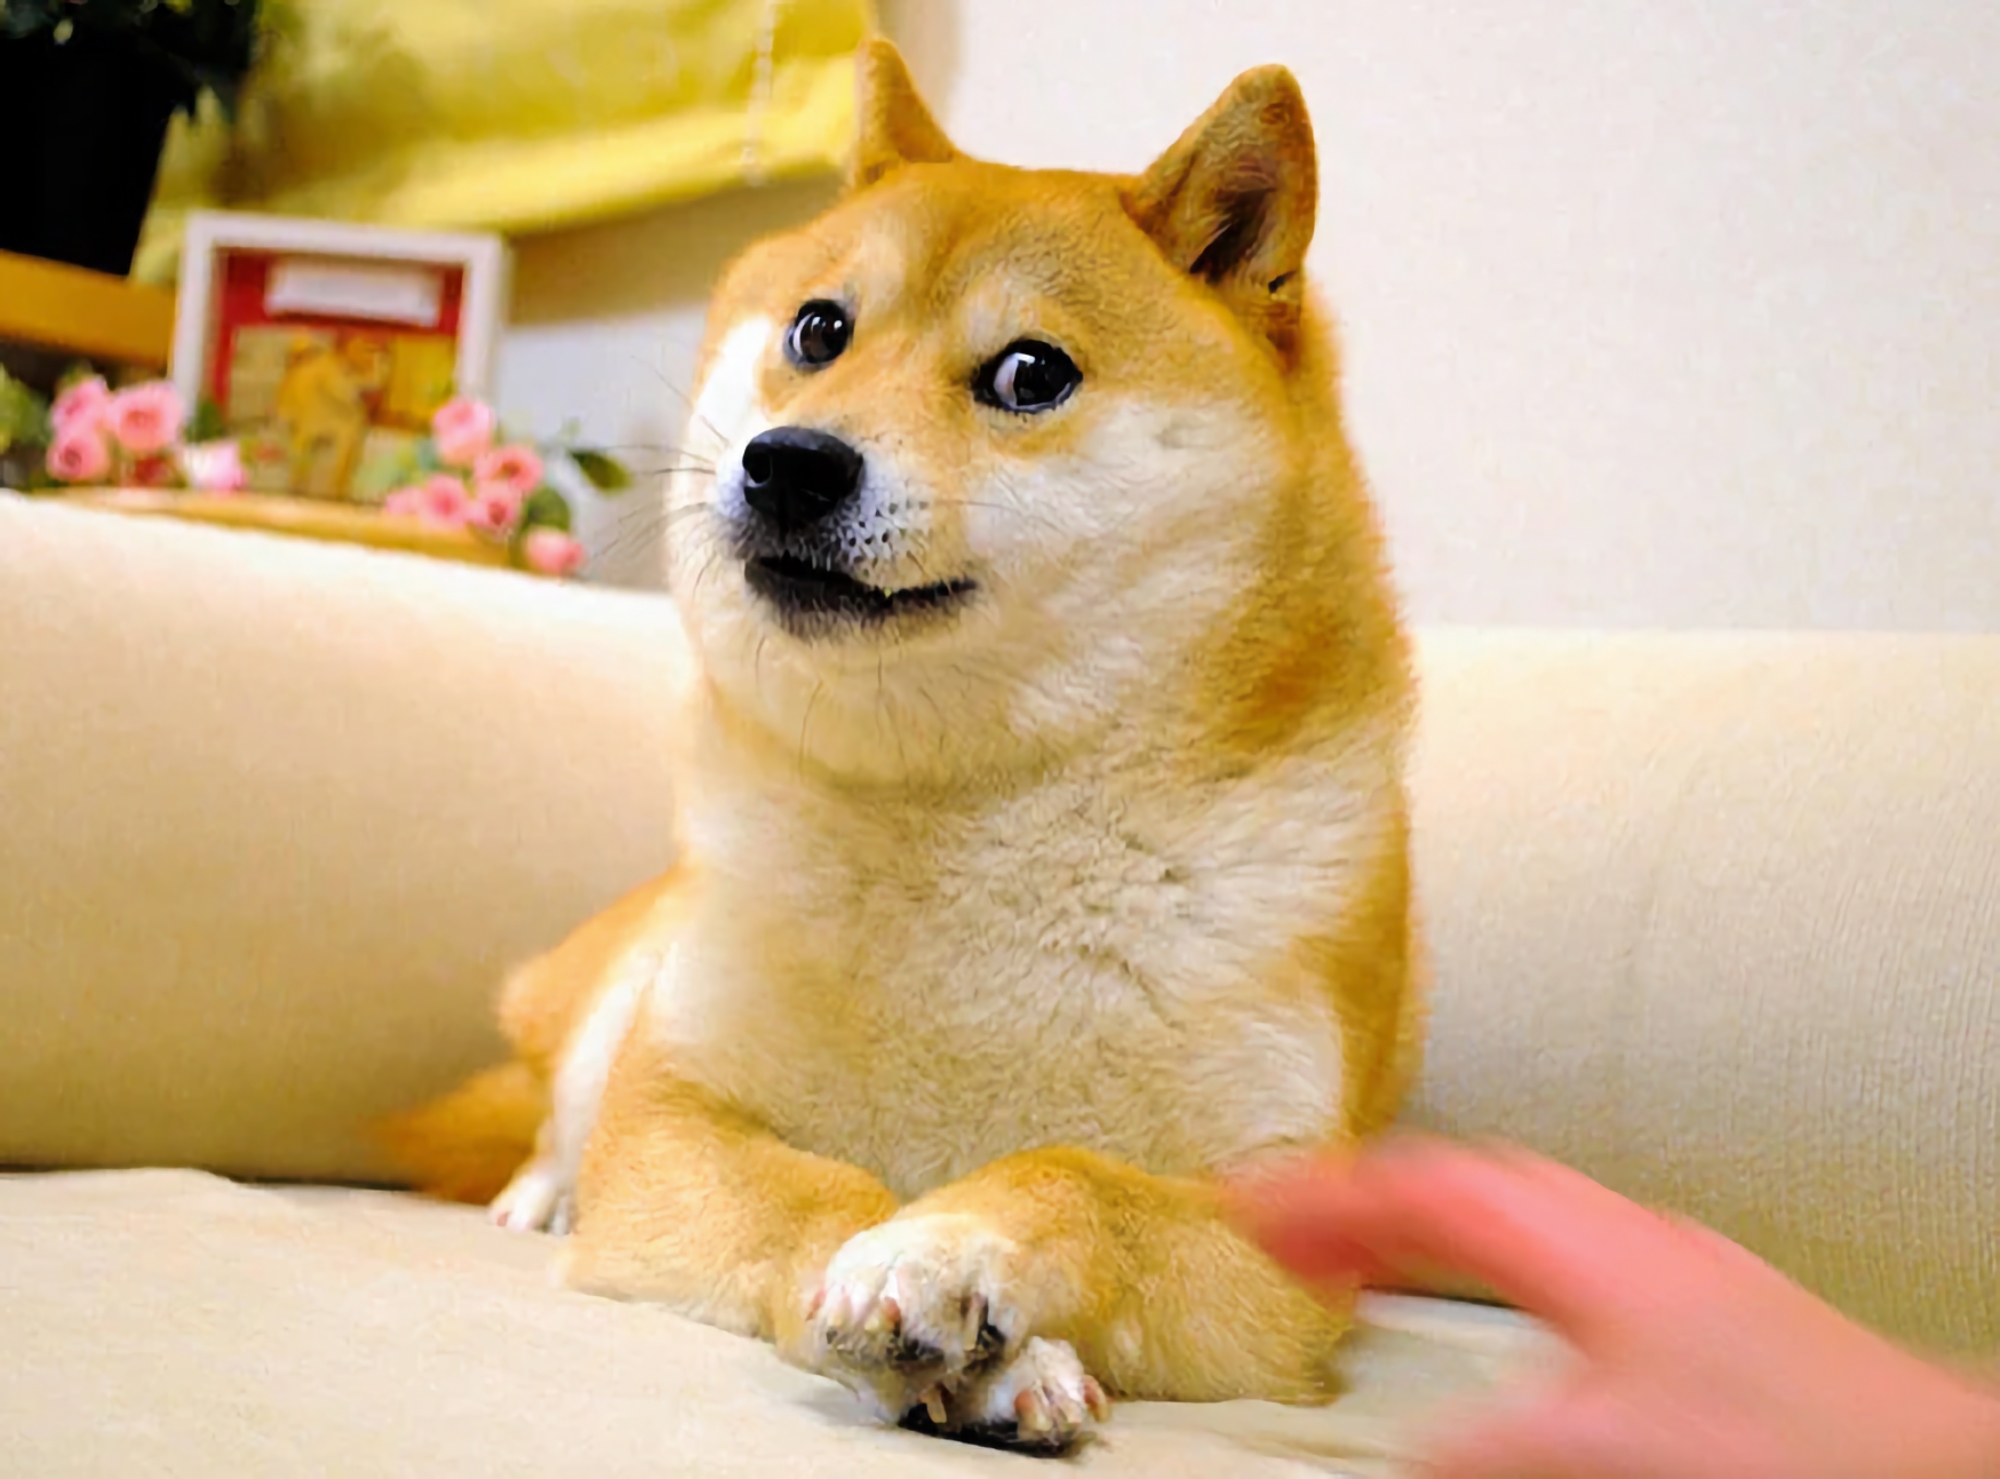 Kabosu, hunden fra Doge-memet, har dødd i sitt 18. leveår